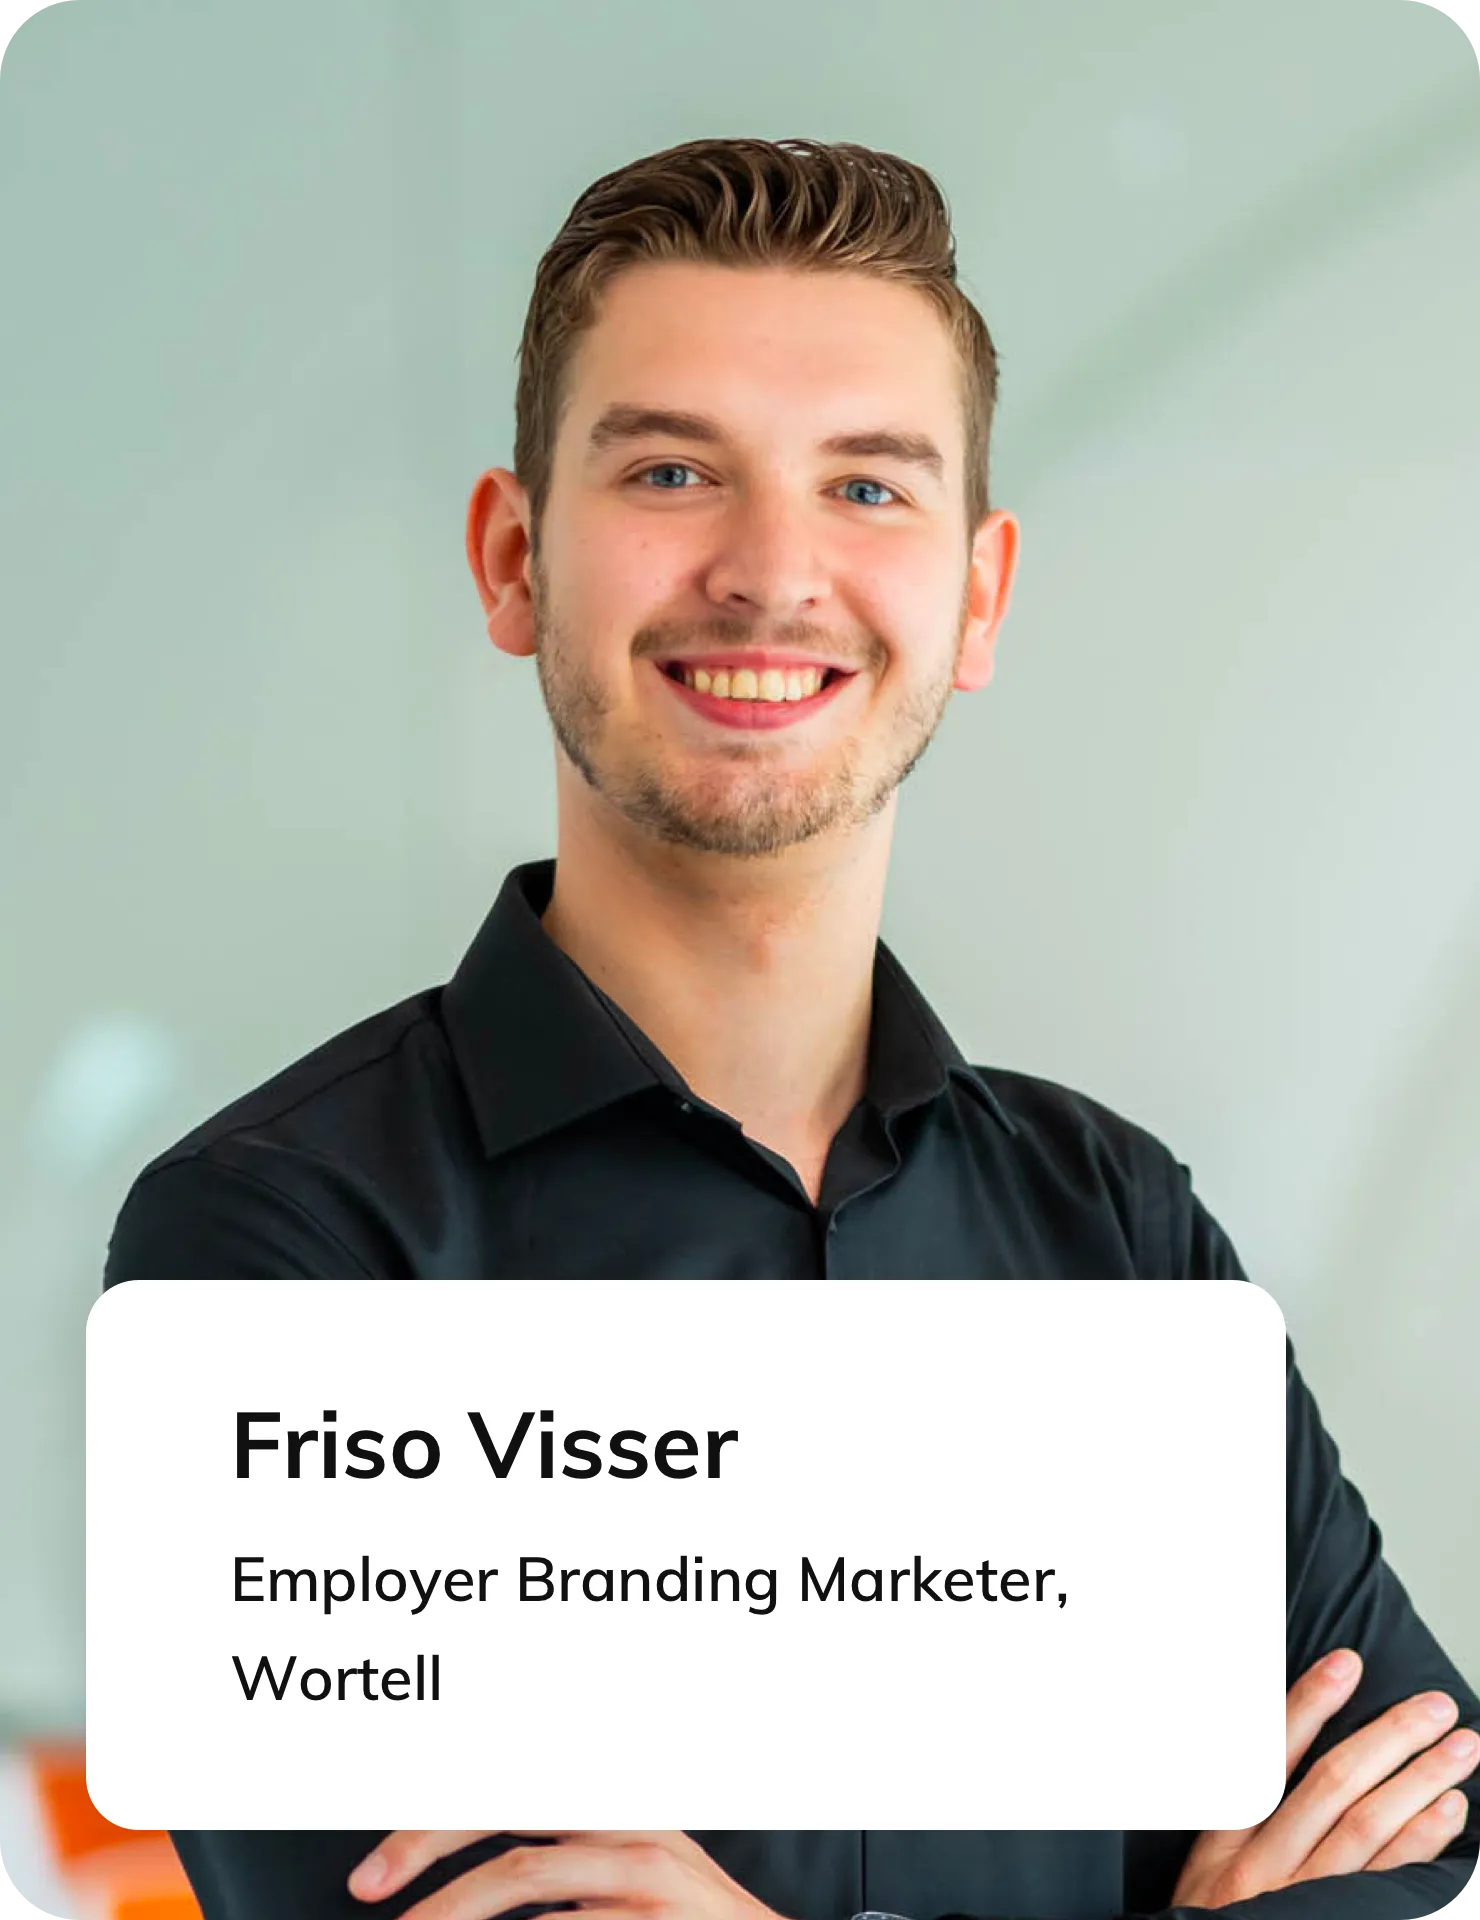 Friso Visser, Employer Branding Marketeer at Wortell